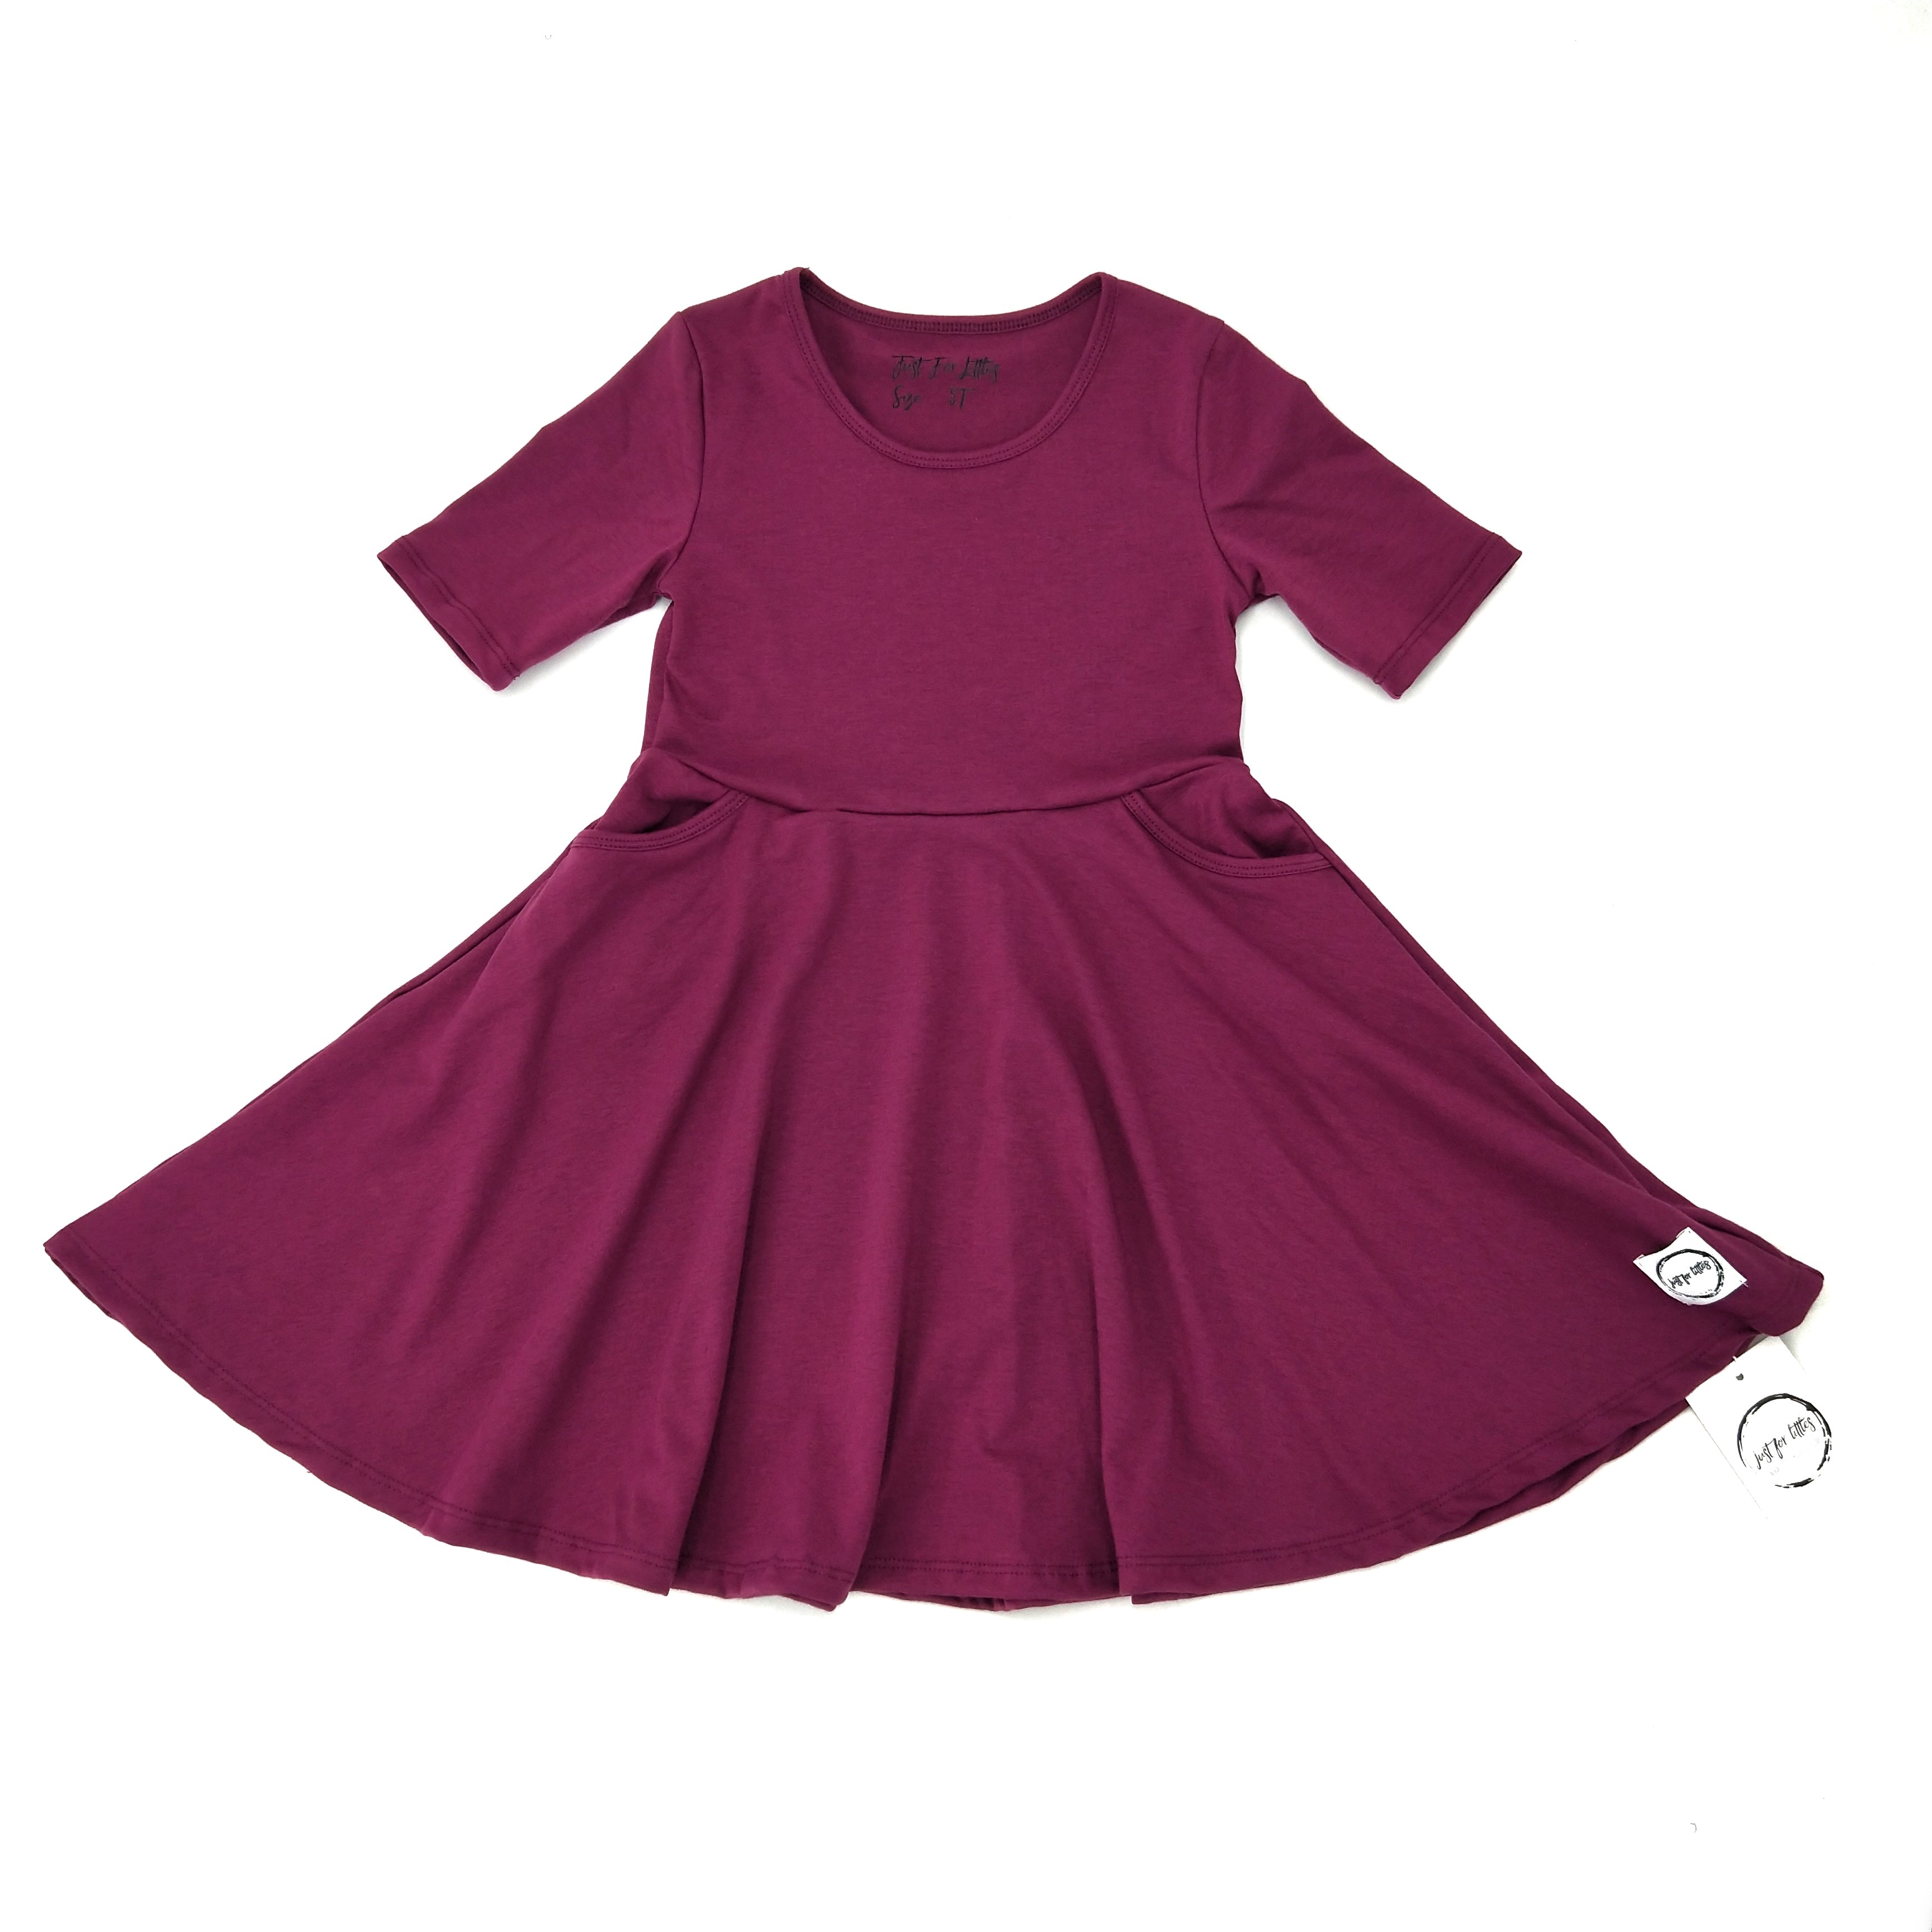 Burgundy Twirl Dress with Pockets